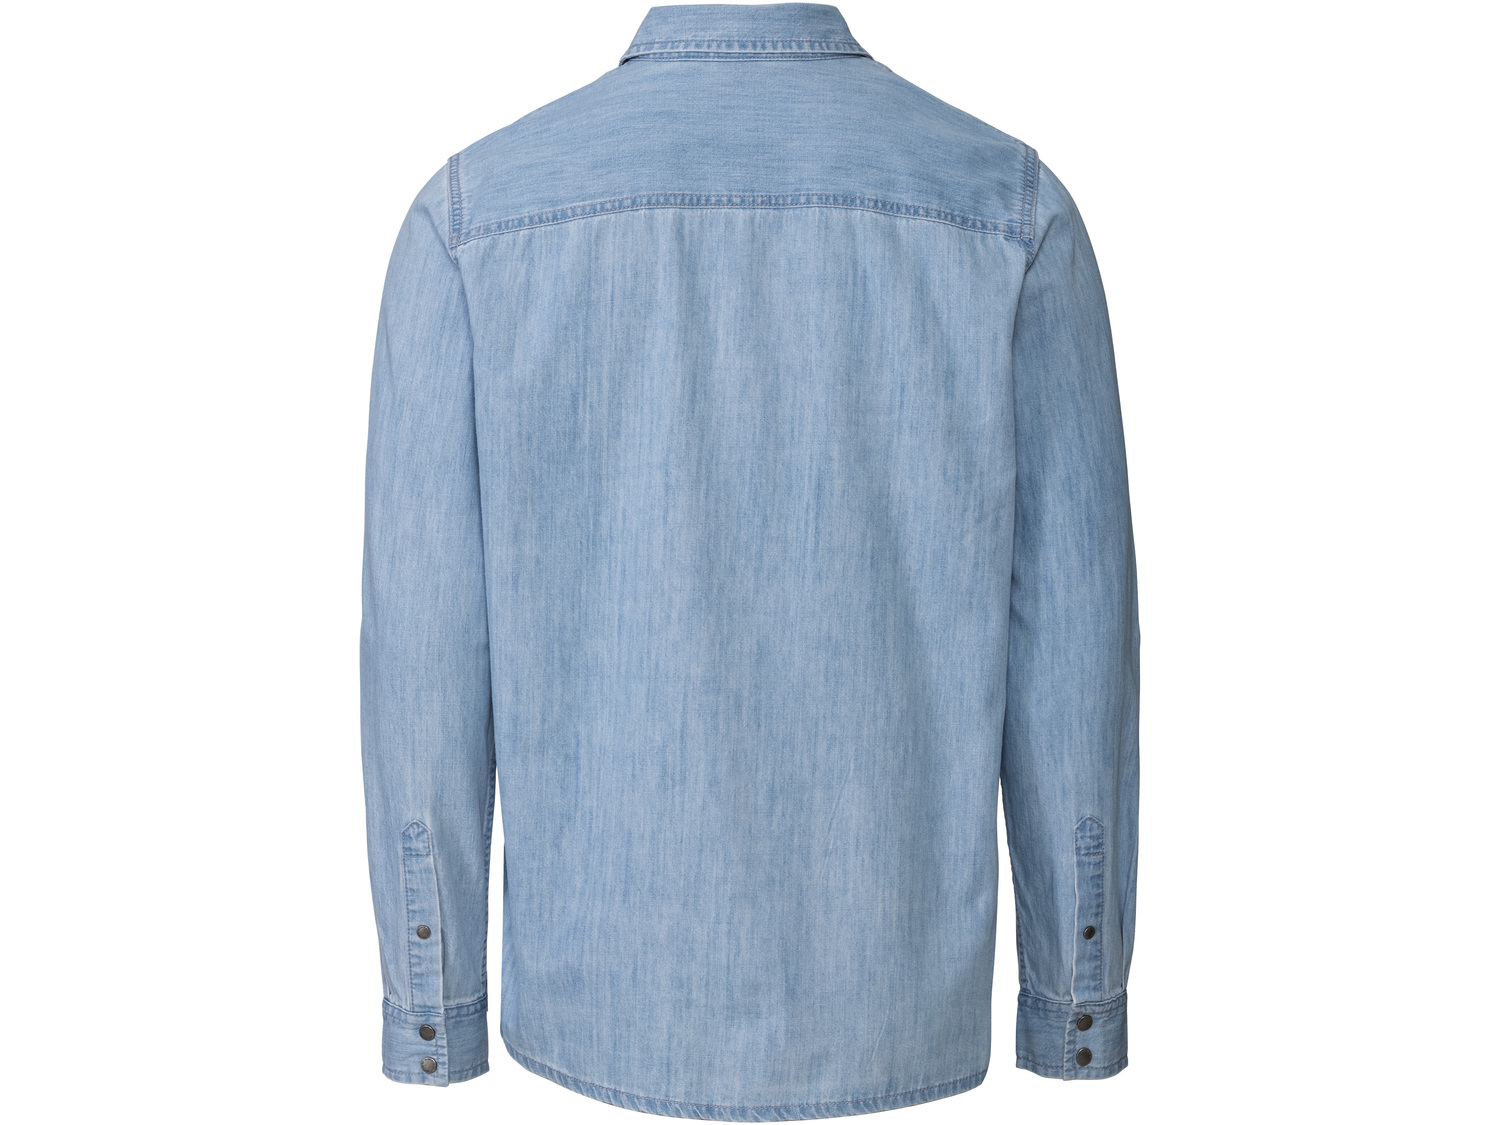 Koszula jeansowa męska Livergy, cena 34,99 PLN 
- rozmiary: M-XL
- 100% bawełny
- ...